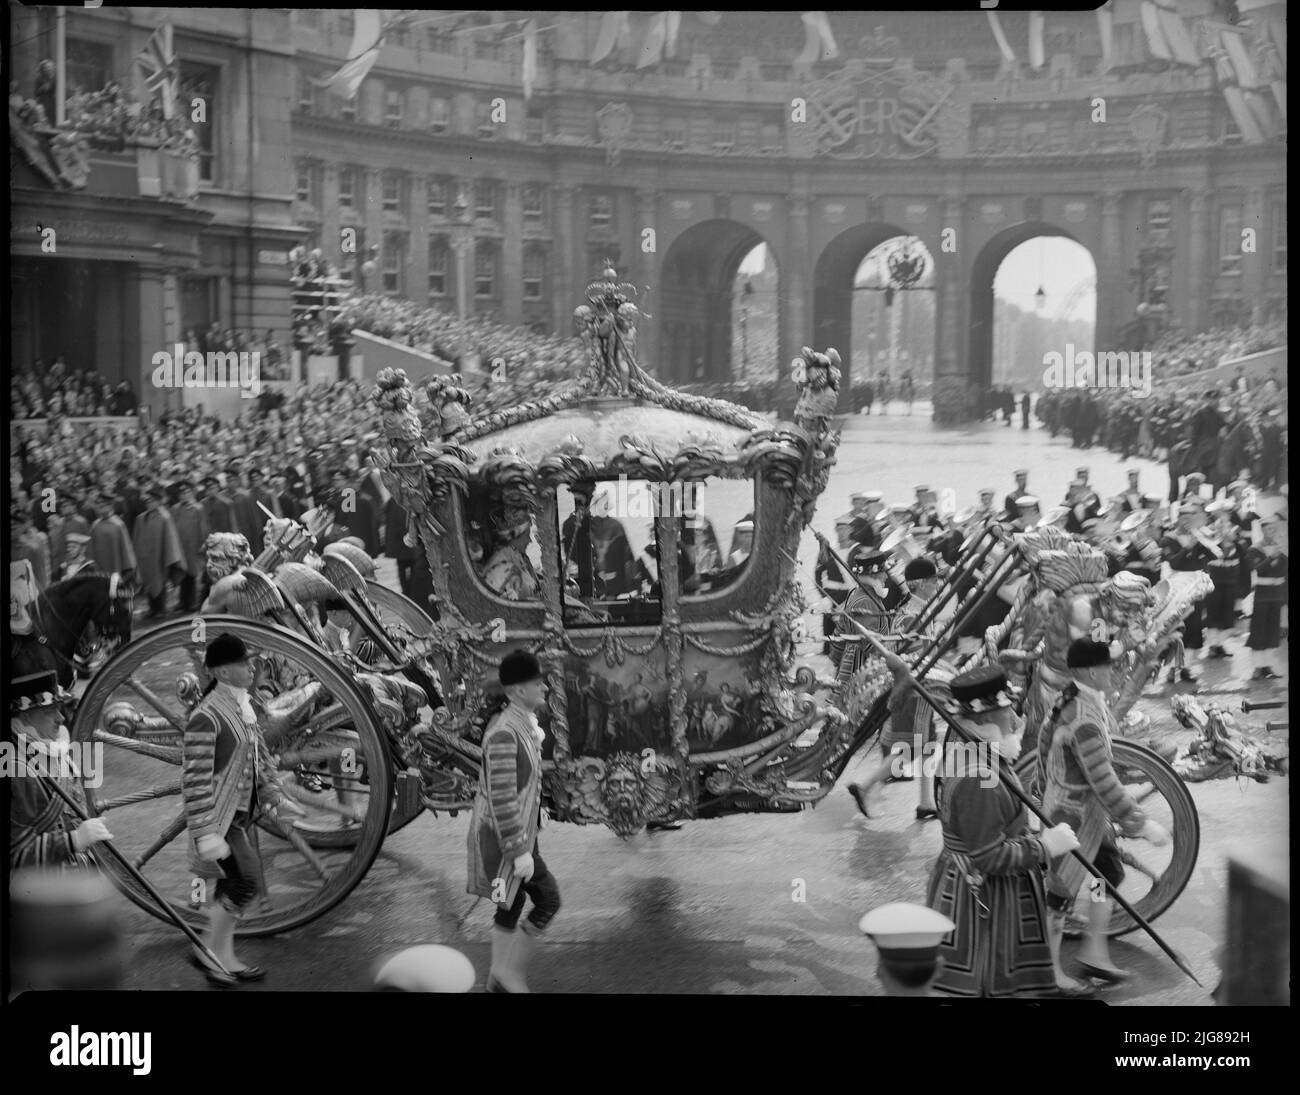 Krönung von Königin Elizabeth II, Admiralty Arch, The Mall, City of Westminster, Greater London Authority, 02-06-1953. Der Gold State Coach, der Königin Elizabeth II. Während der Krönungsprozession am Admiralty Arch vorbeiführt. Stockfoto